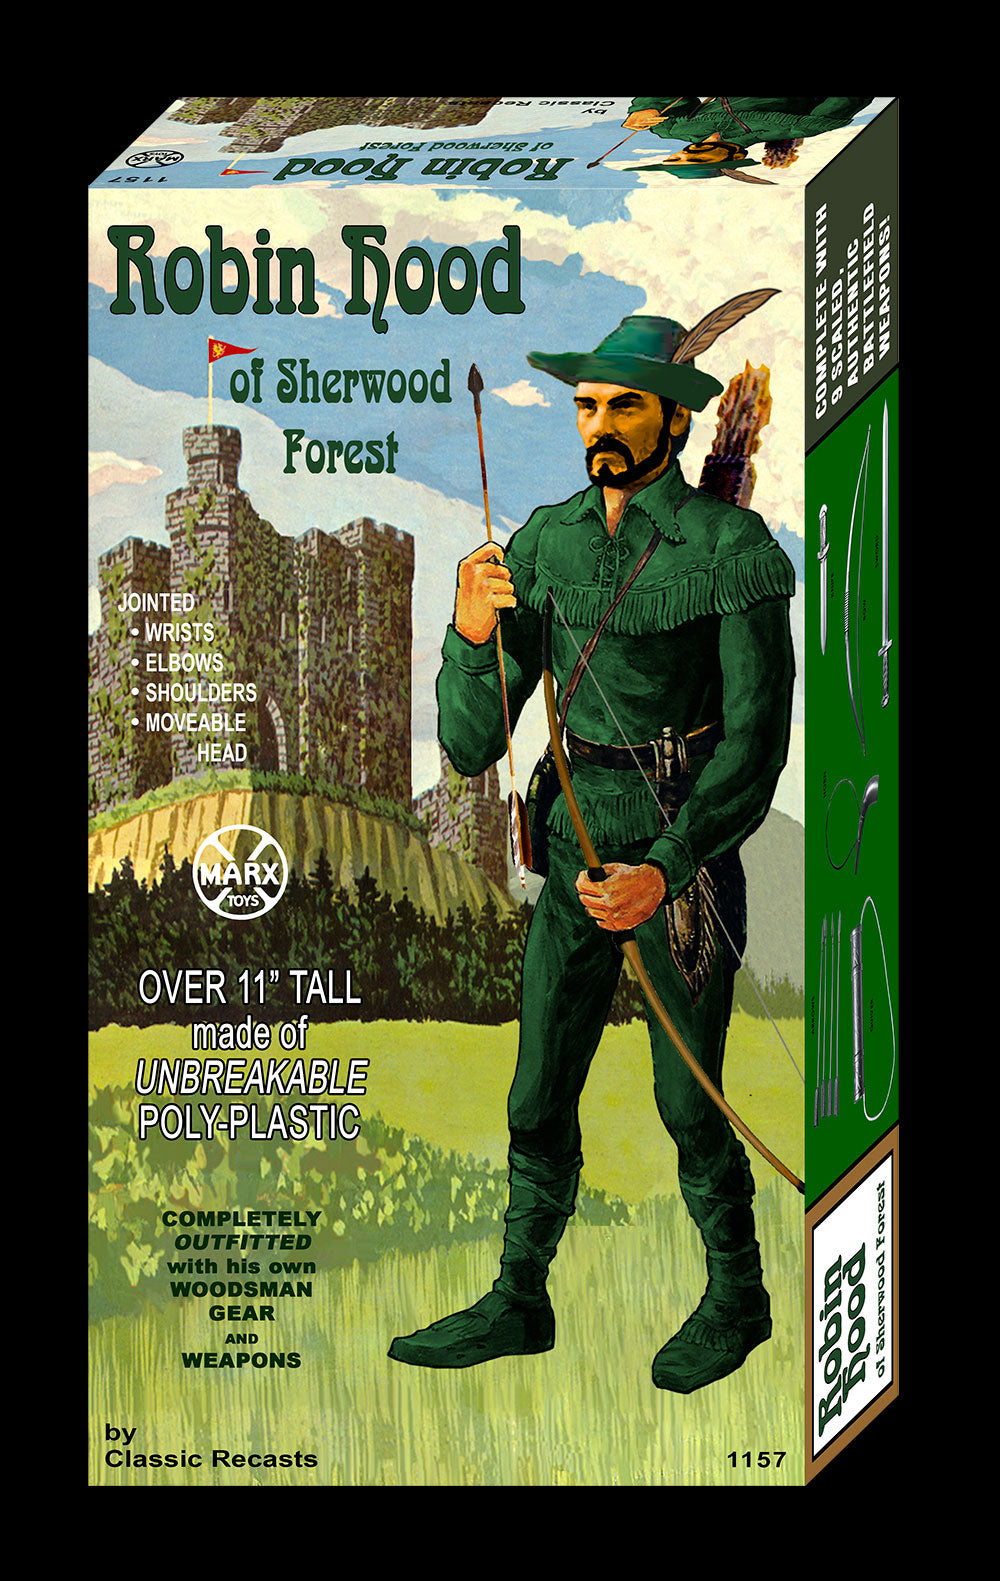 Robin Hood Fantasy Box and Manual